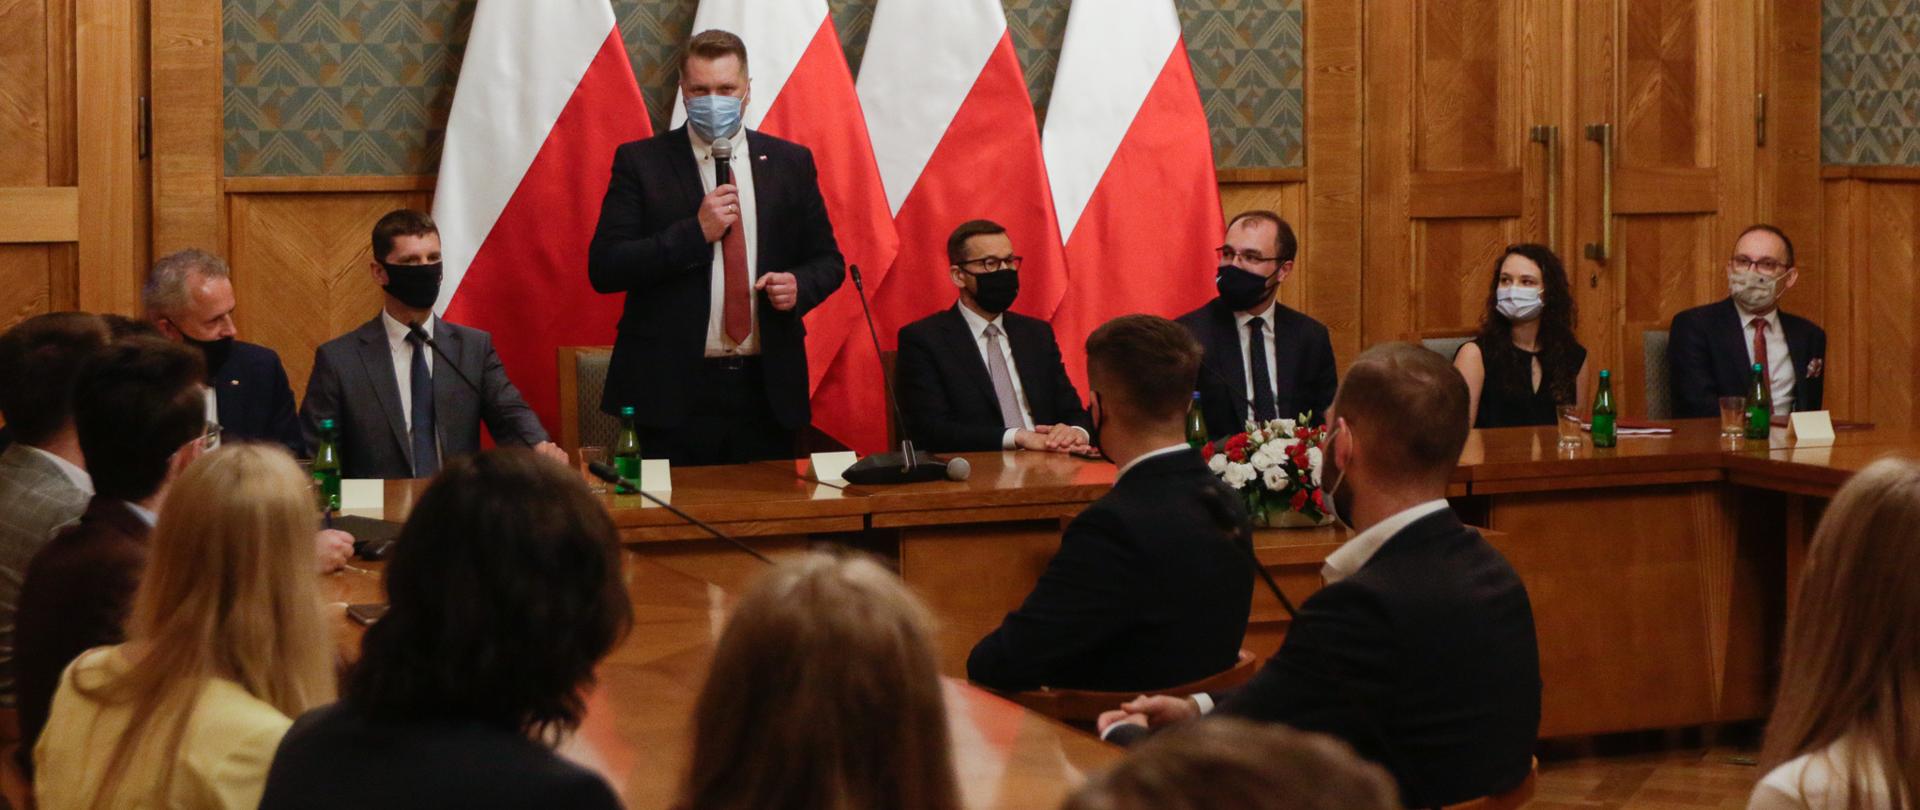 Minister Czarnek przemawia podczas spotkania. Obok siedzą premier Mateusz Morawiecki oraz wiceminister Dariusz Piontkowski. Na przeciwko siedzą pozostali uczestnicy spotkania.